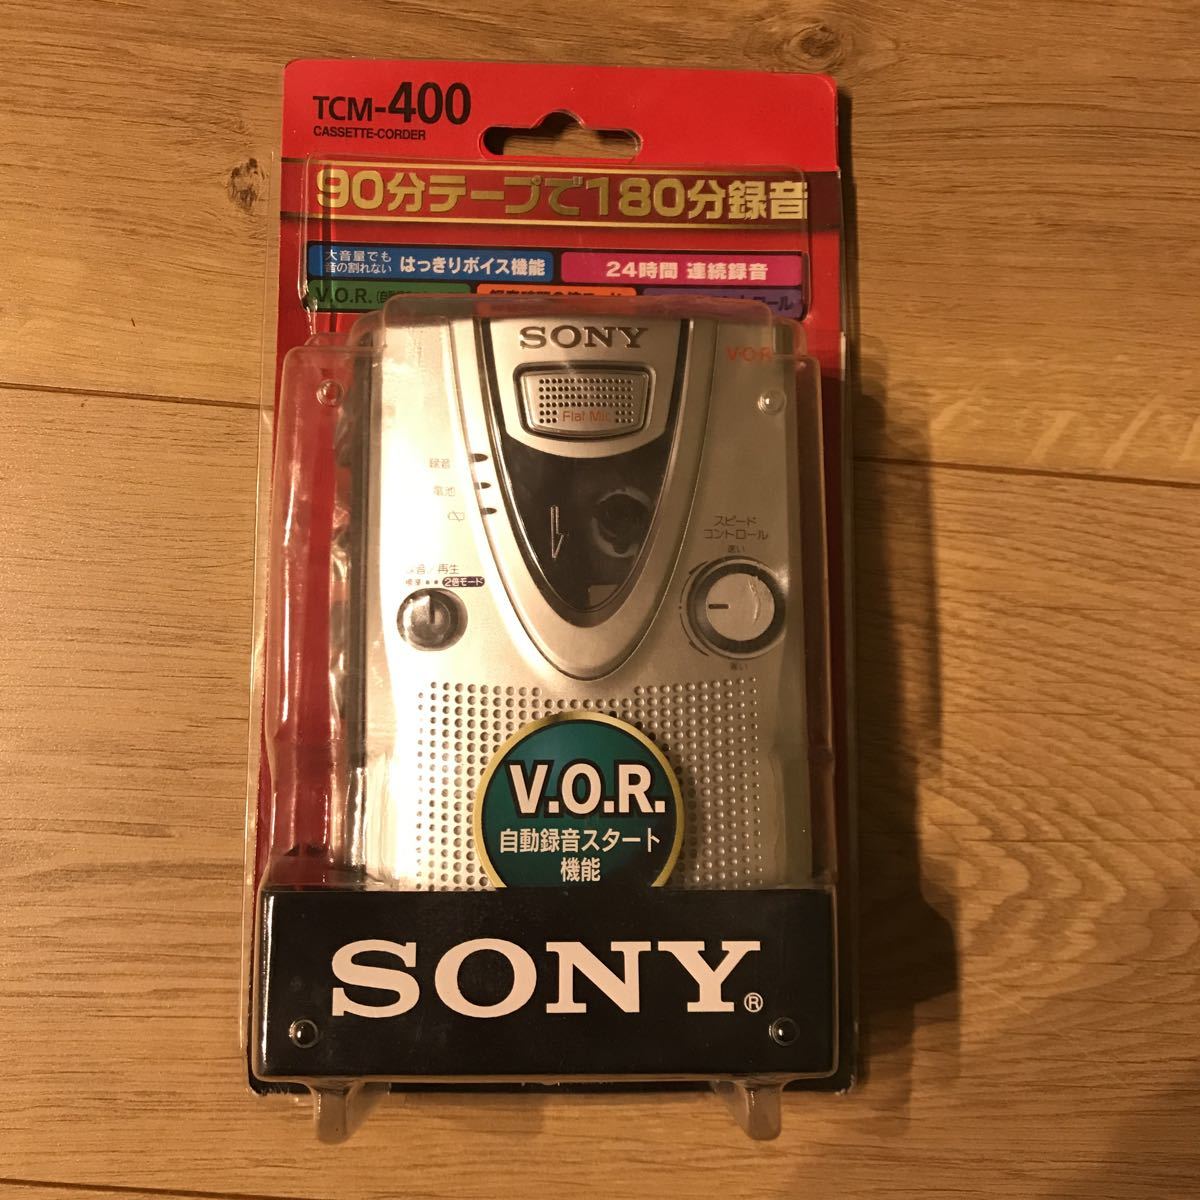 未使用的項目SONY索尼VOR安裝高音錄音機編碼器TCM-400 原文:未使用品 SONY ソニー VOR搭載高音質 カセットコーダー テープレコーダー TCM-400